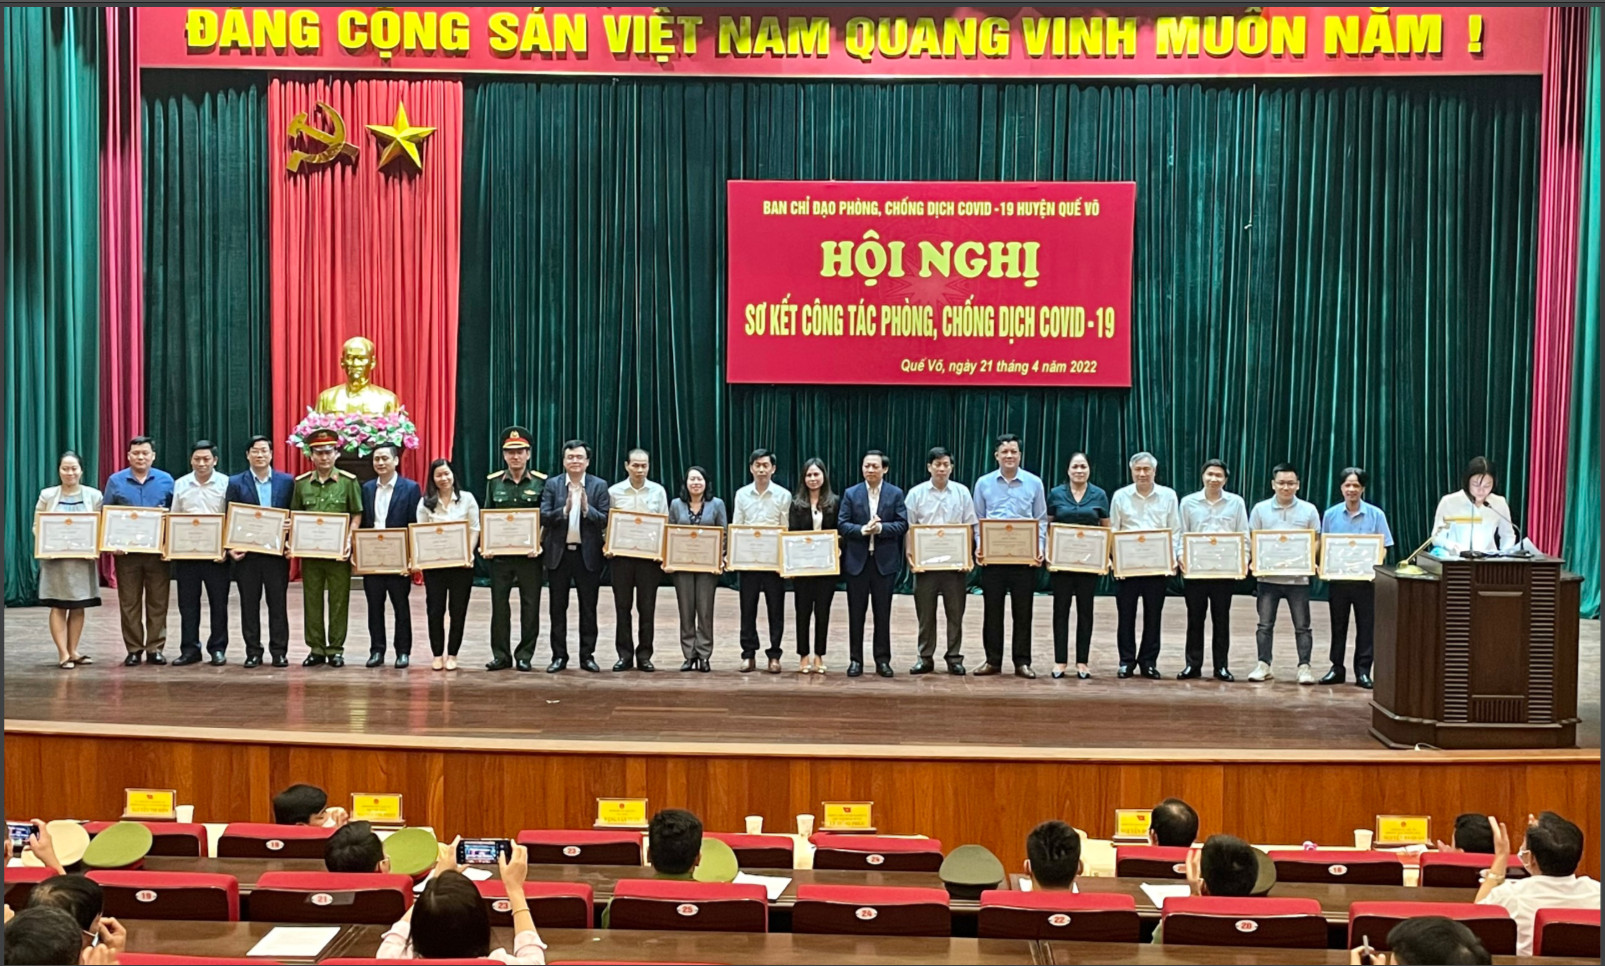 Hội nghị sơ kết công tác phòng, chống dịch Covid-19 trên địa bàn huyện Quế Võ